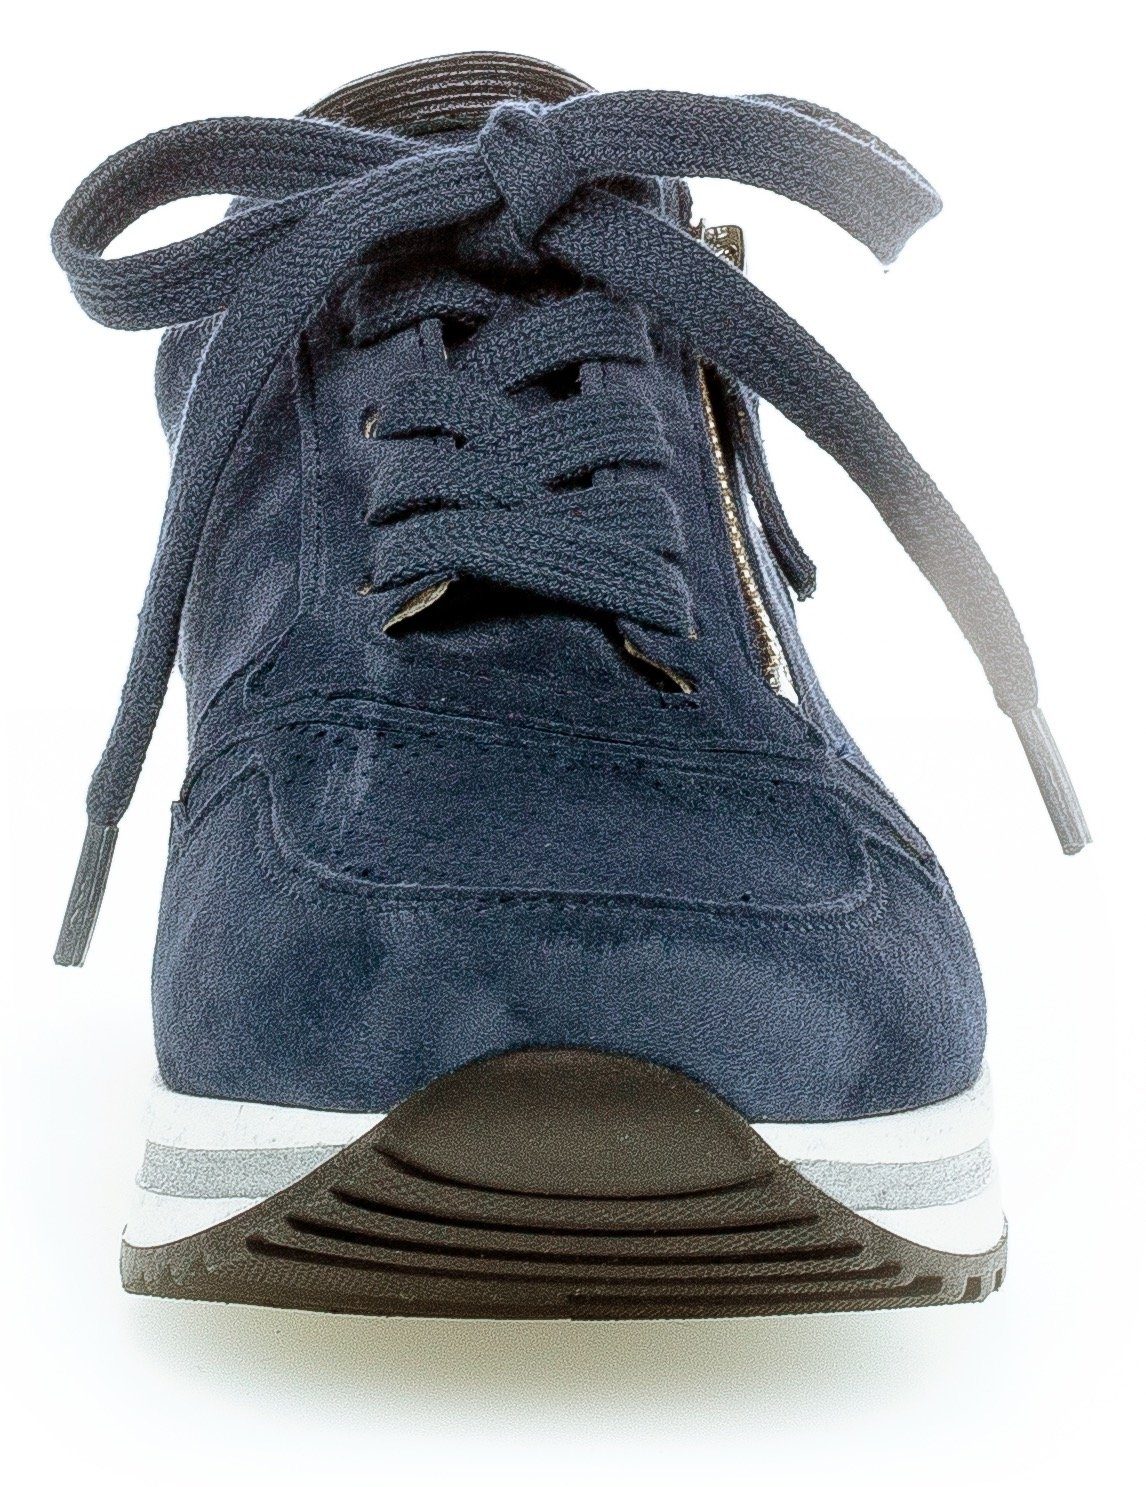 Gabor TURIN mit blau Perforierung Keilsneaker leichter